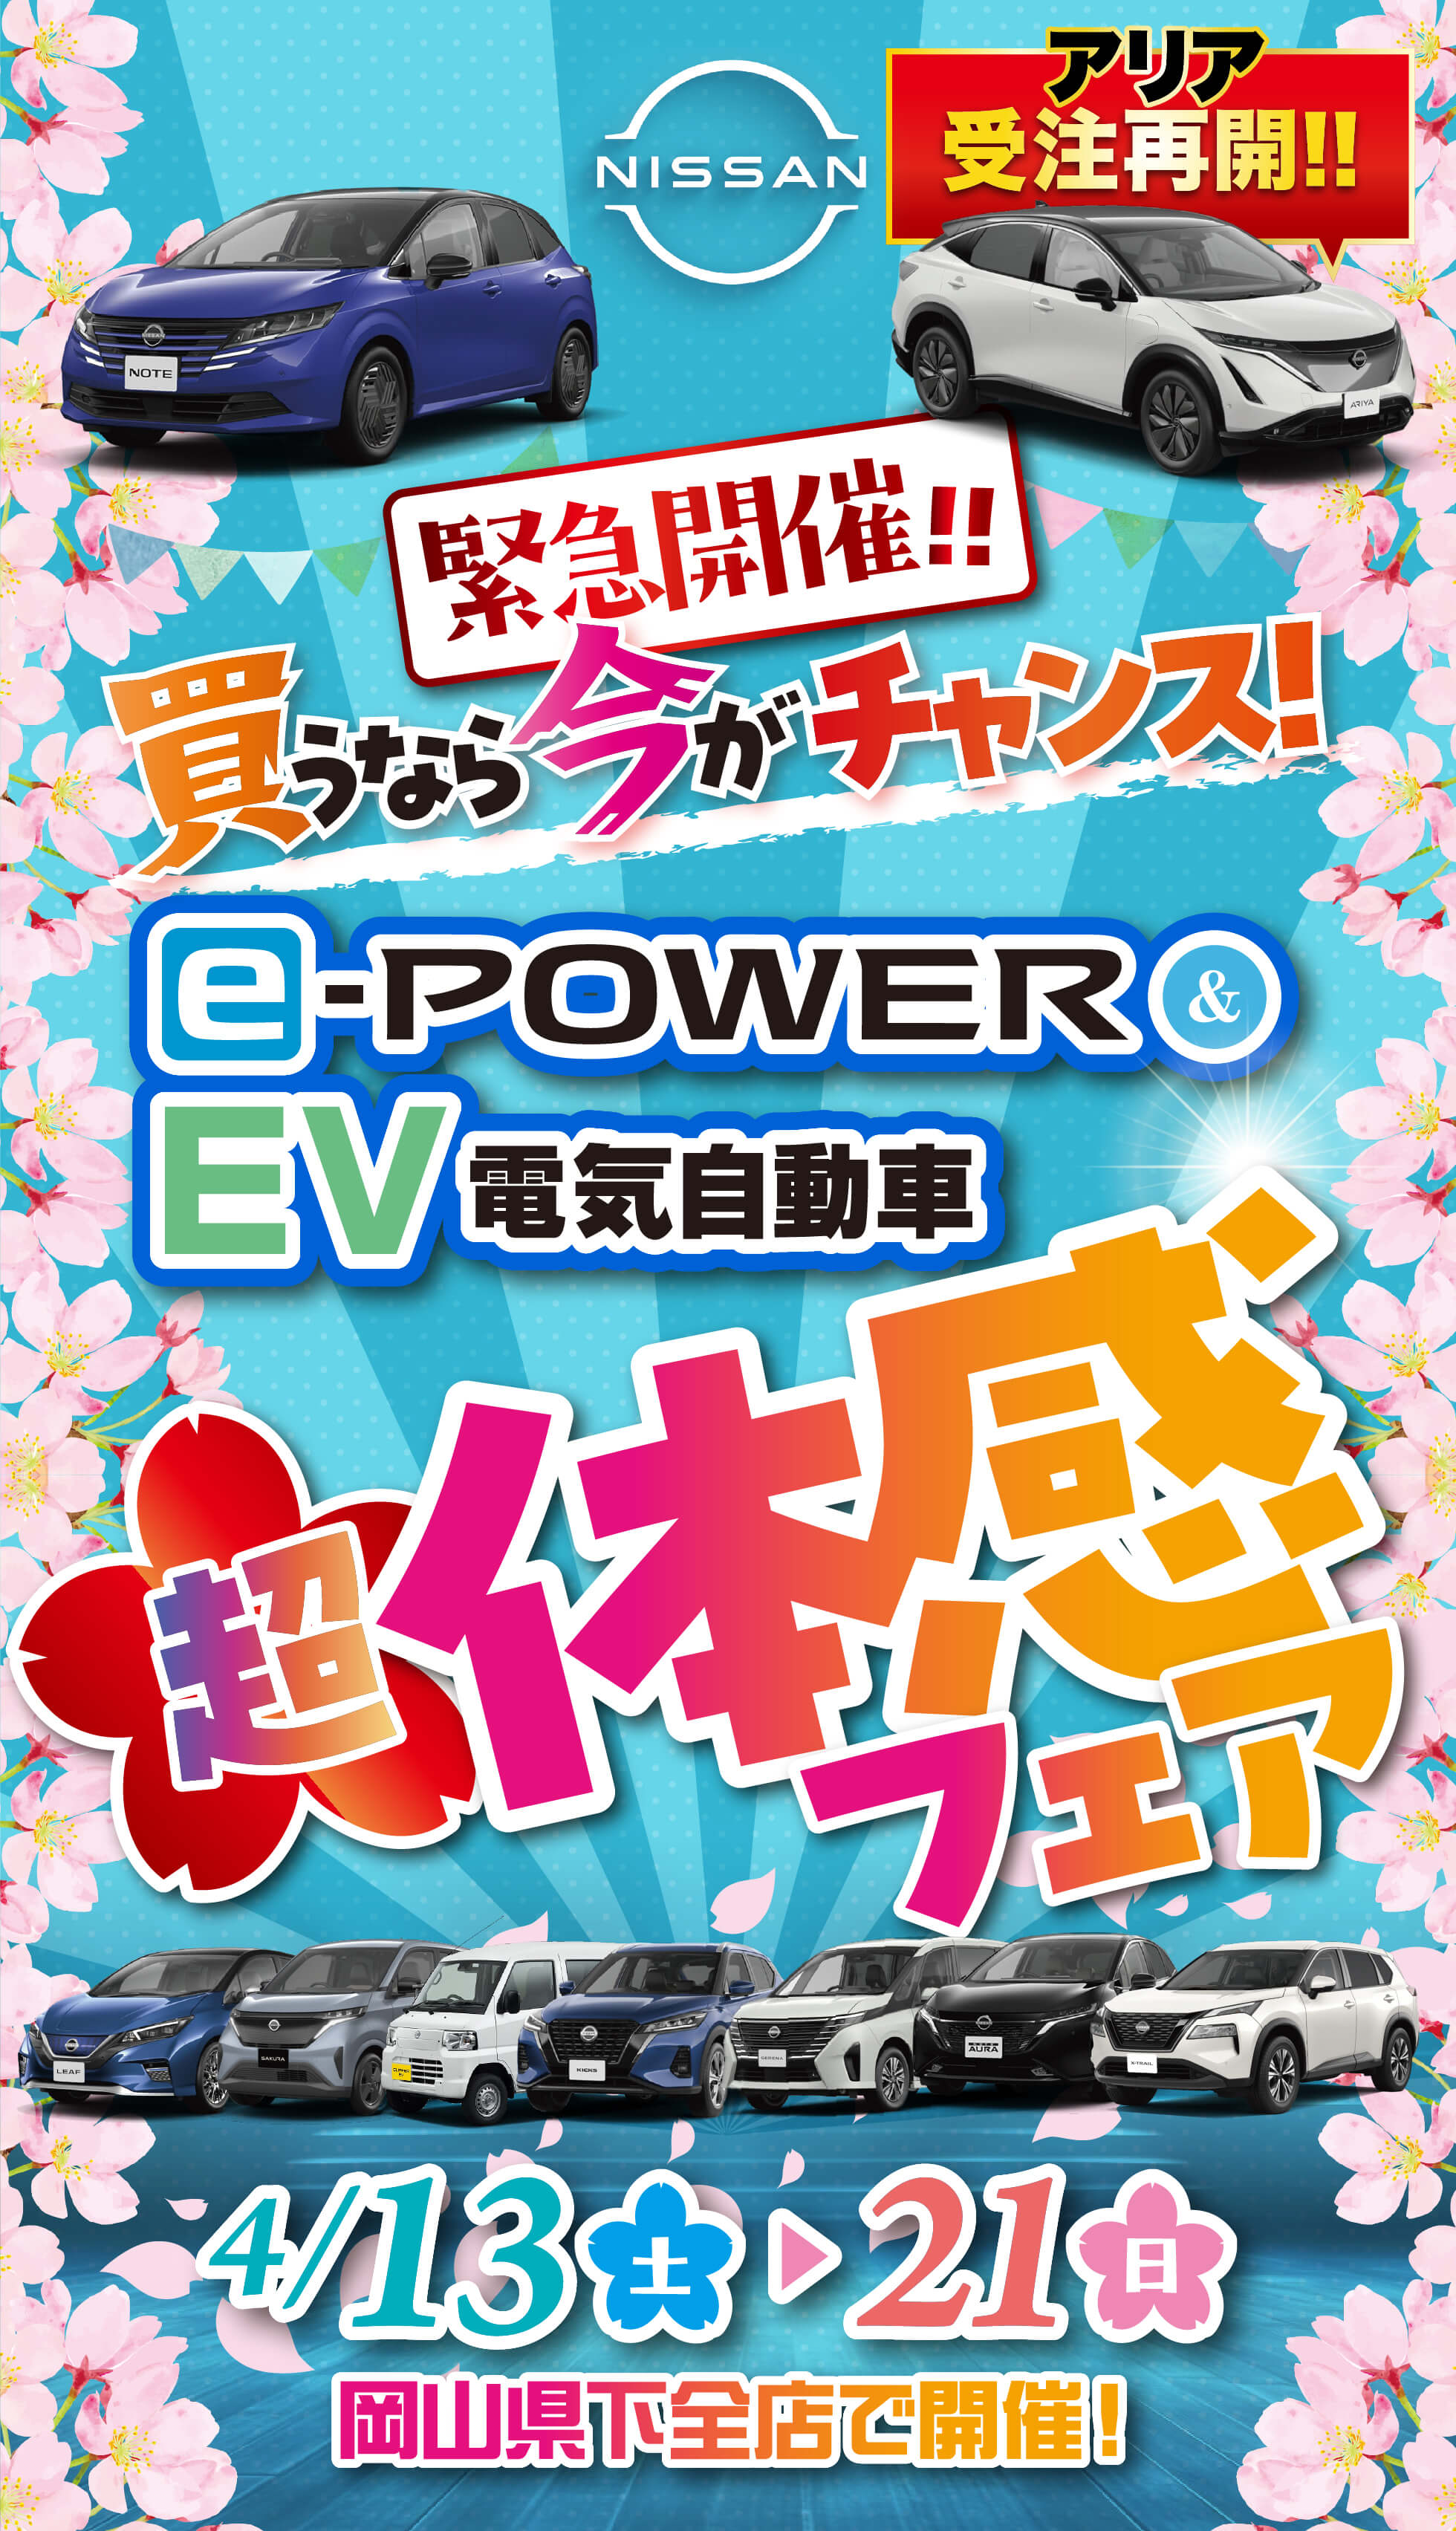 NISSAN 緊急開催！！買うなら今がチャンス！e-POWER & EV電気自動車 超体感フェア 4/13(土)-4/21(日) 岡山県下全店で開催！